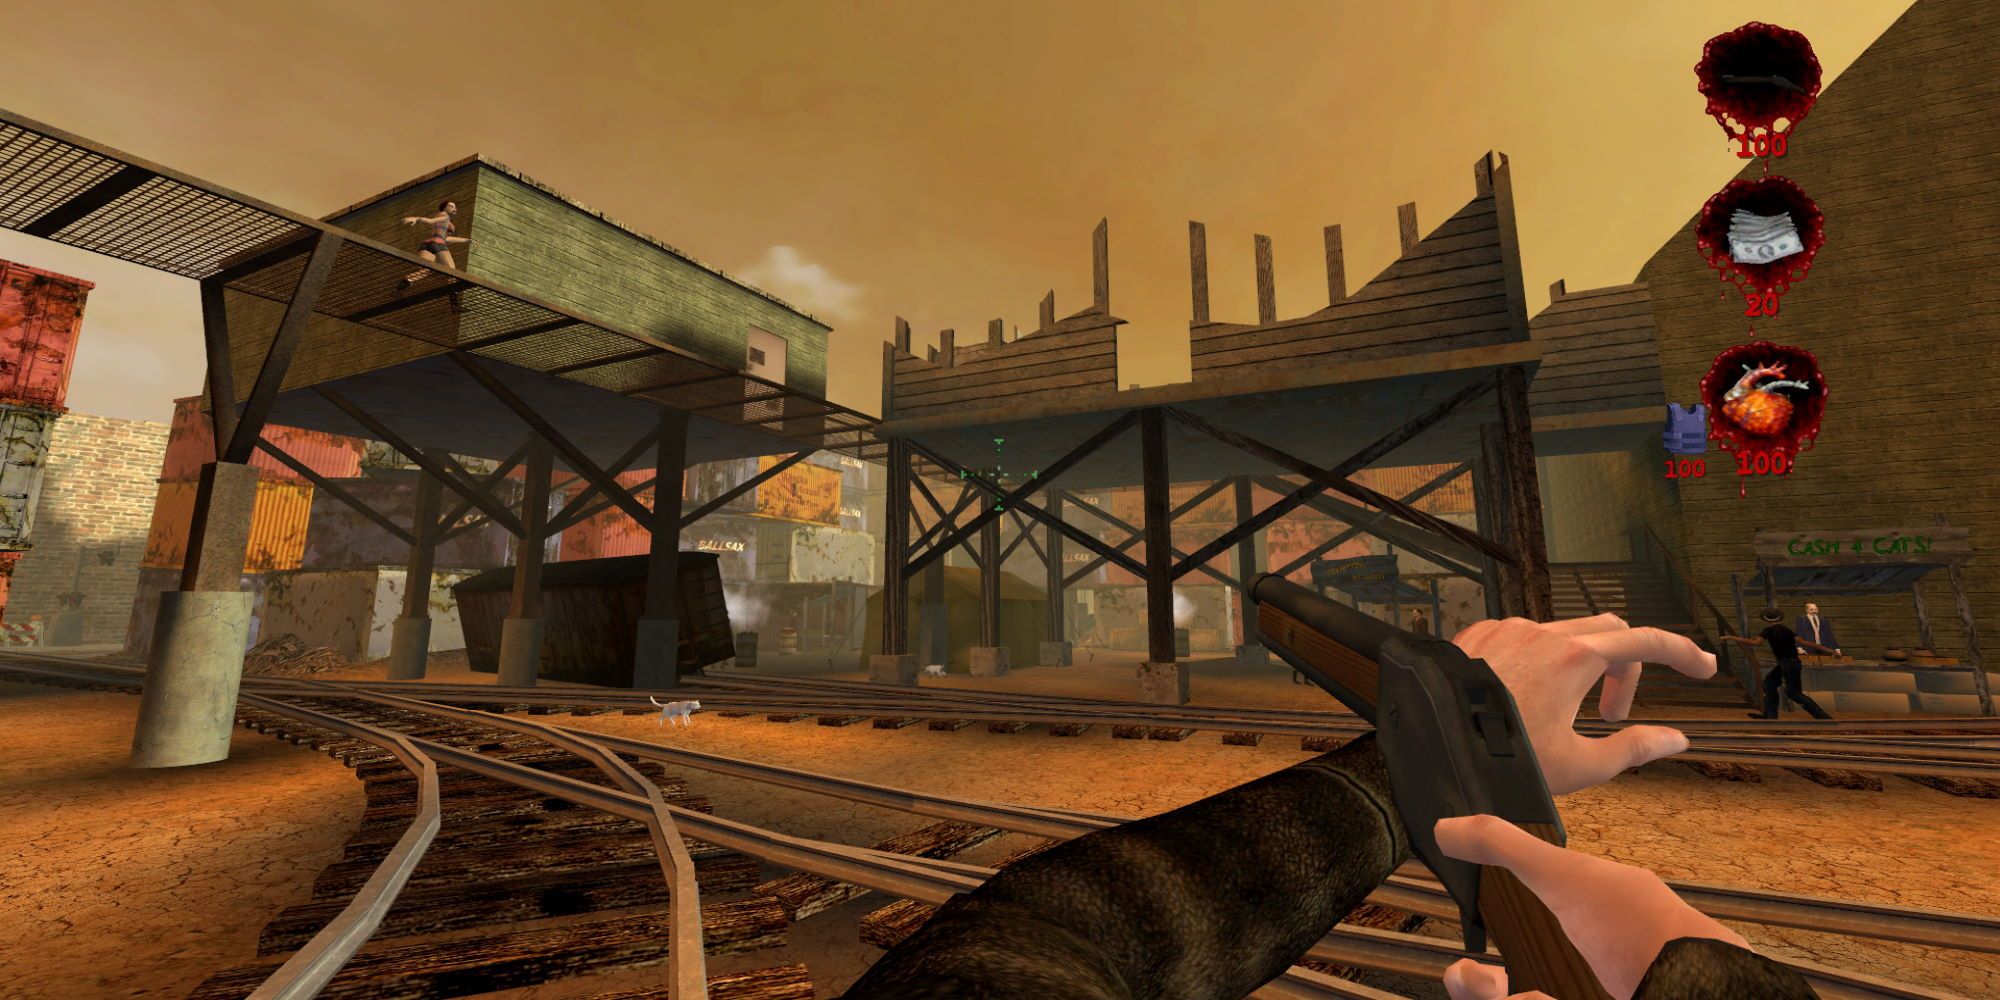 A junkyard town near train tracks. The protagonist is aiming a shotgun